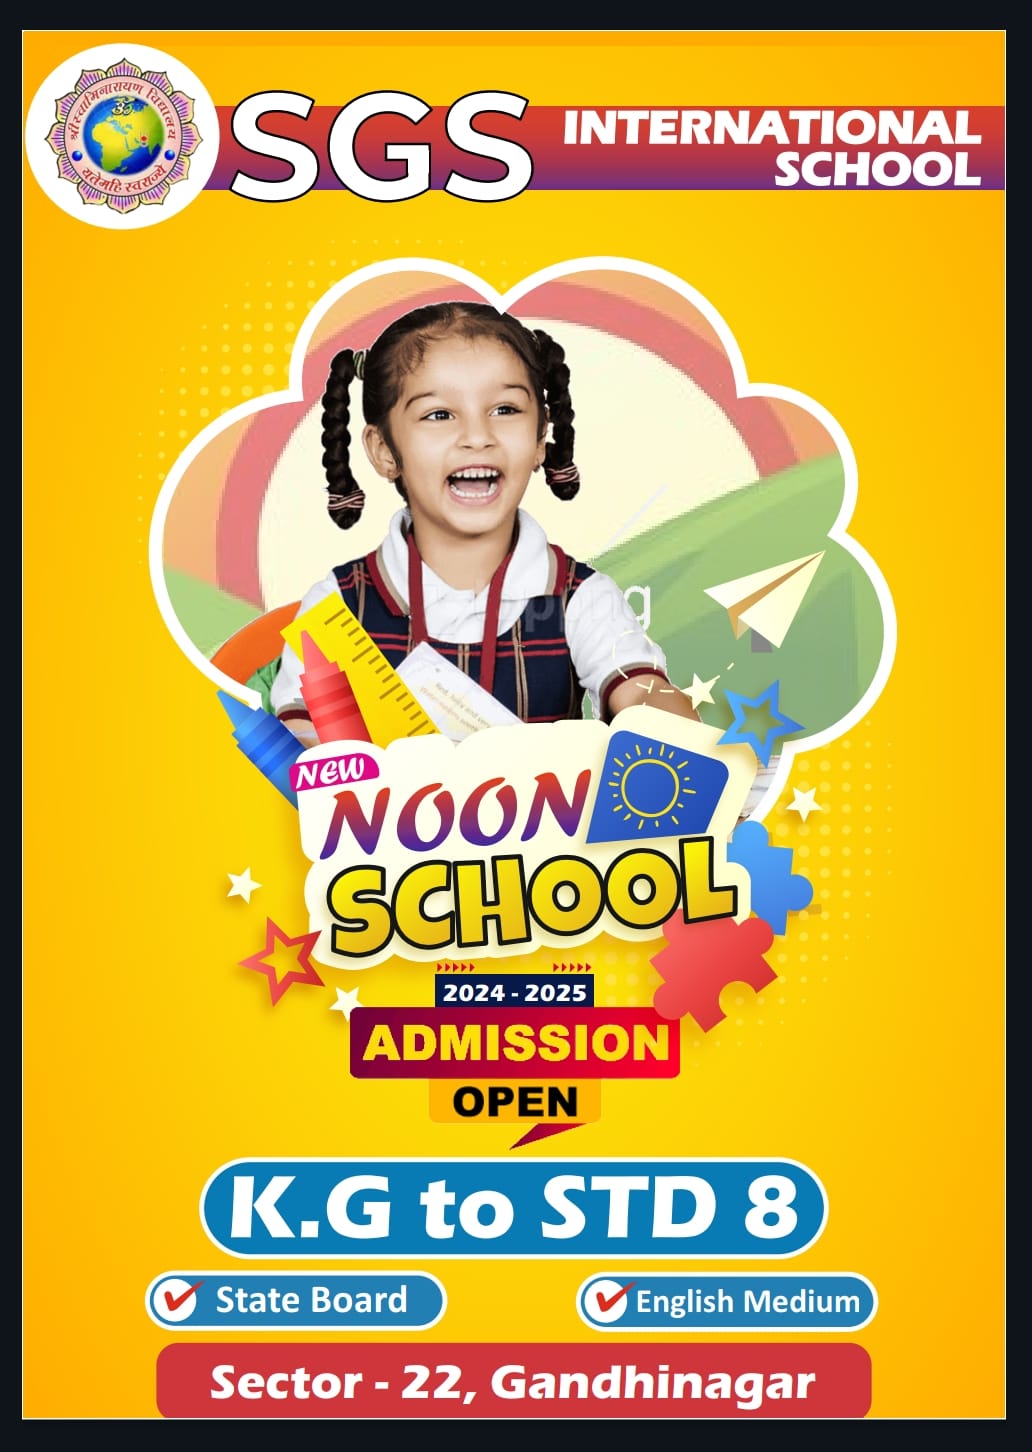 SGS Noon School